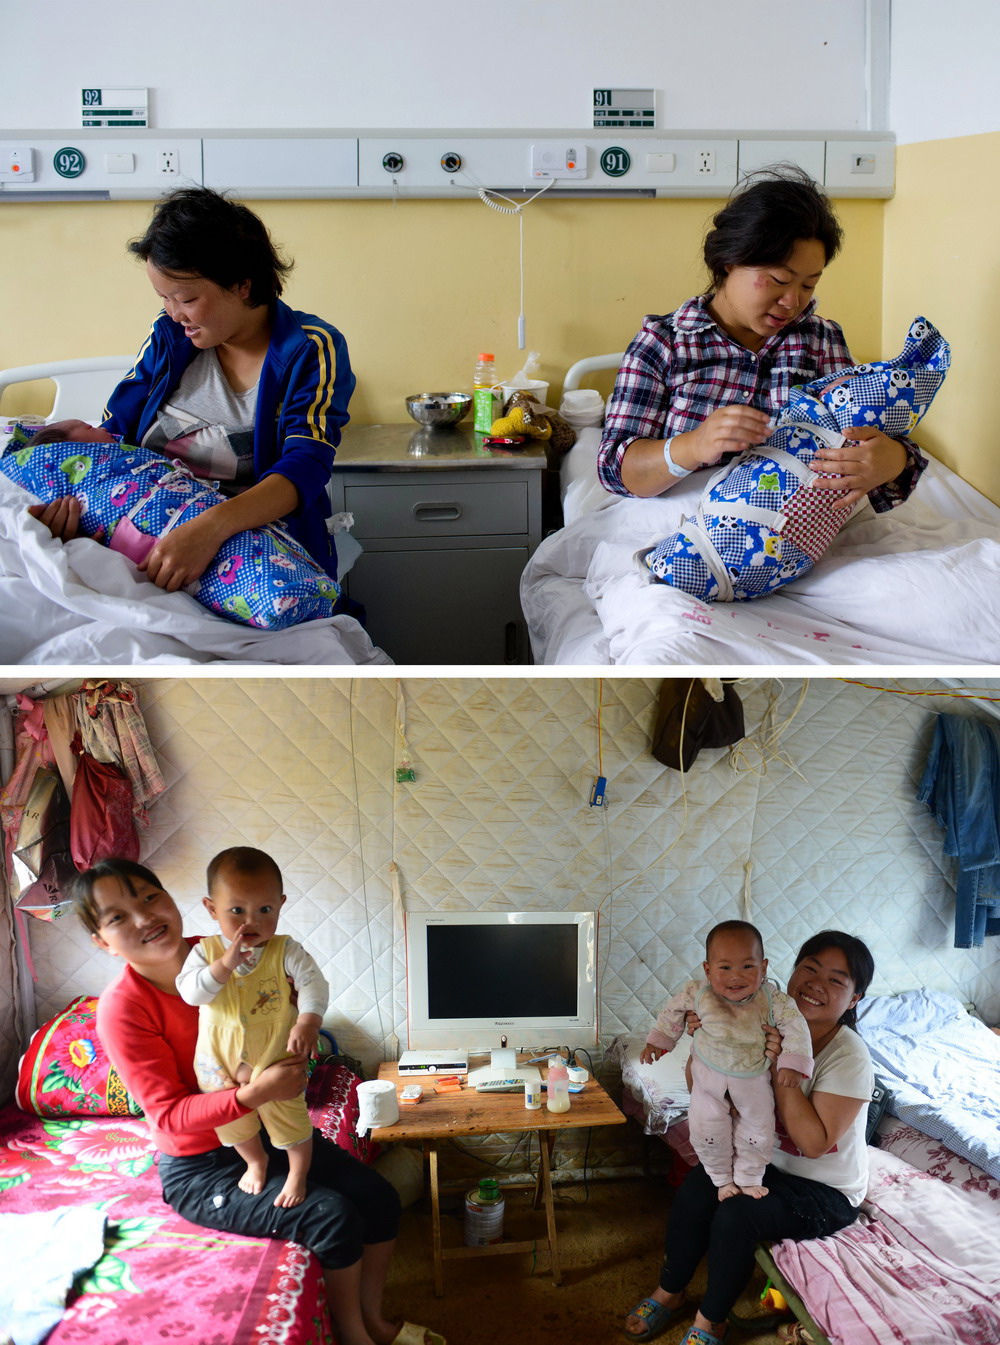 上图：在鲁甸县人民医院，常臣淑（右）和李世琼抱着刚出生不久的孩子（2014年8月5日摄）；下图：在鲁甸县火德红镇李家山村大坪社安置点，常臣淑（右）和李世琼抱着快满1周岁的孩子（2015年7月31日摄）。